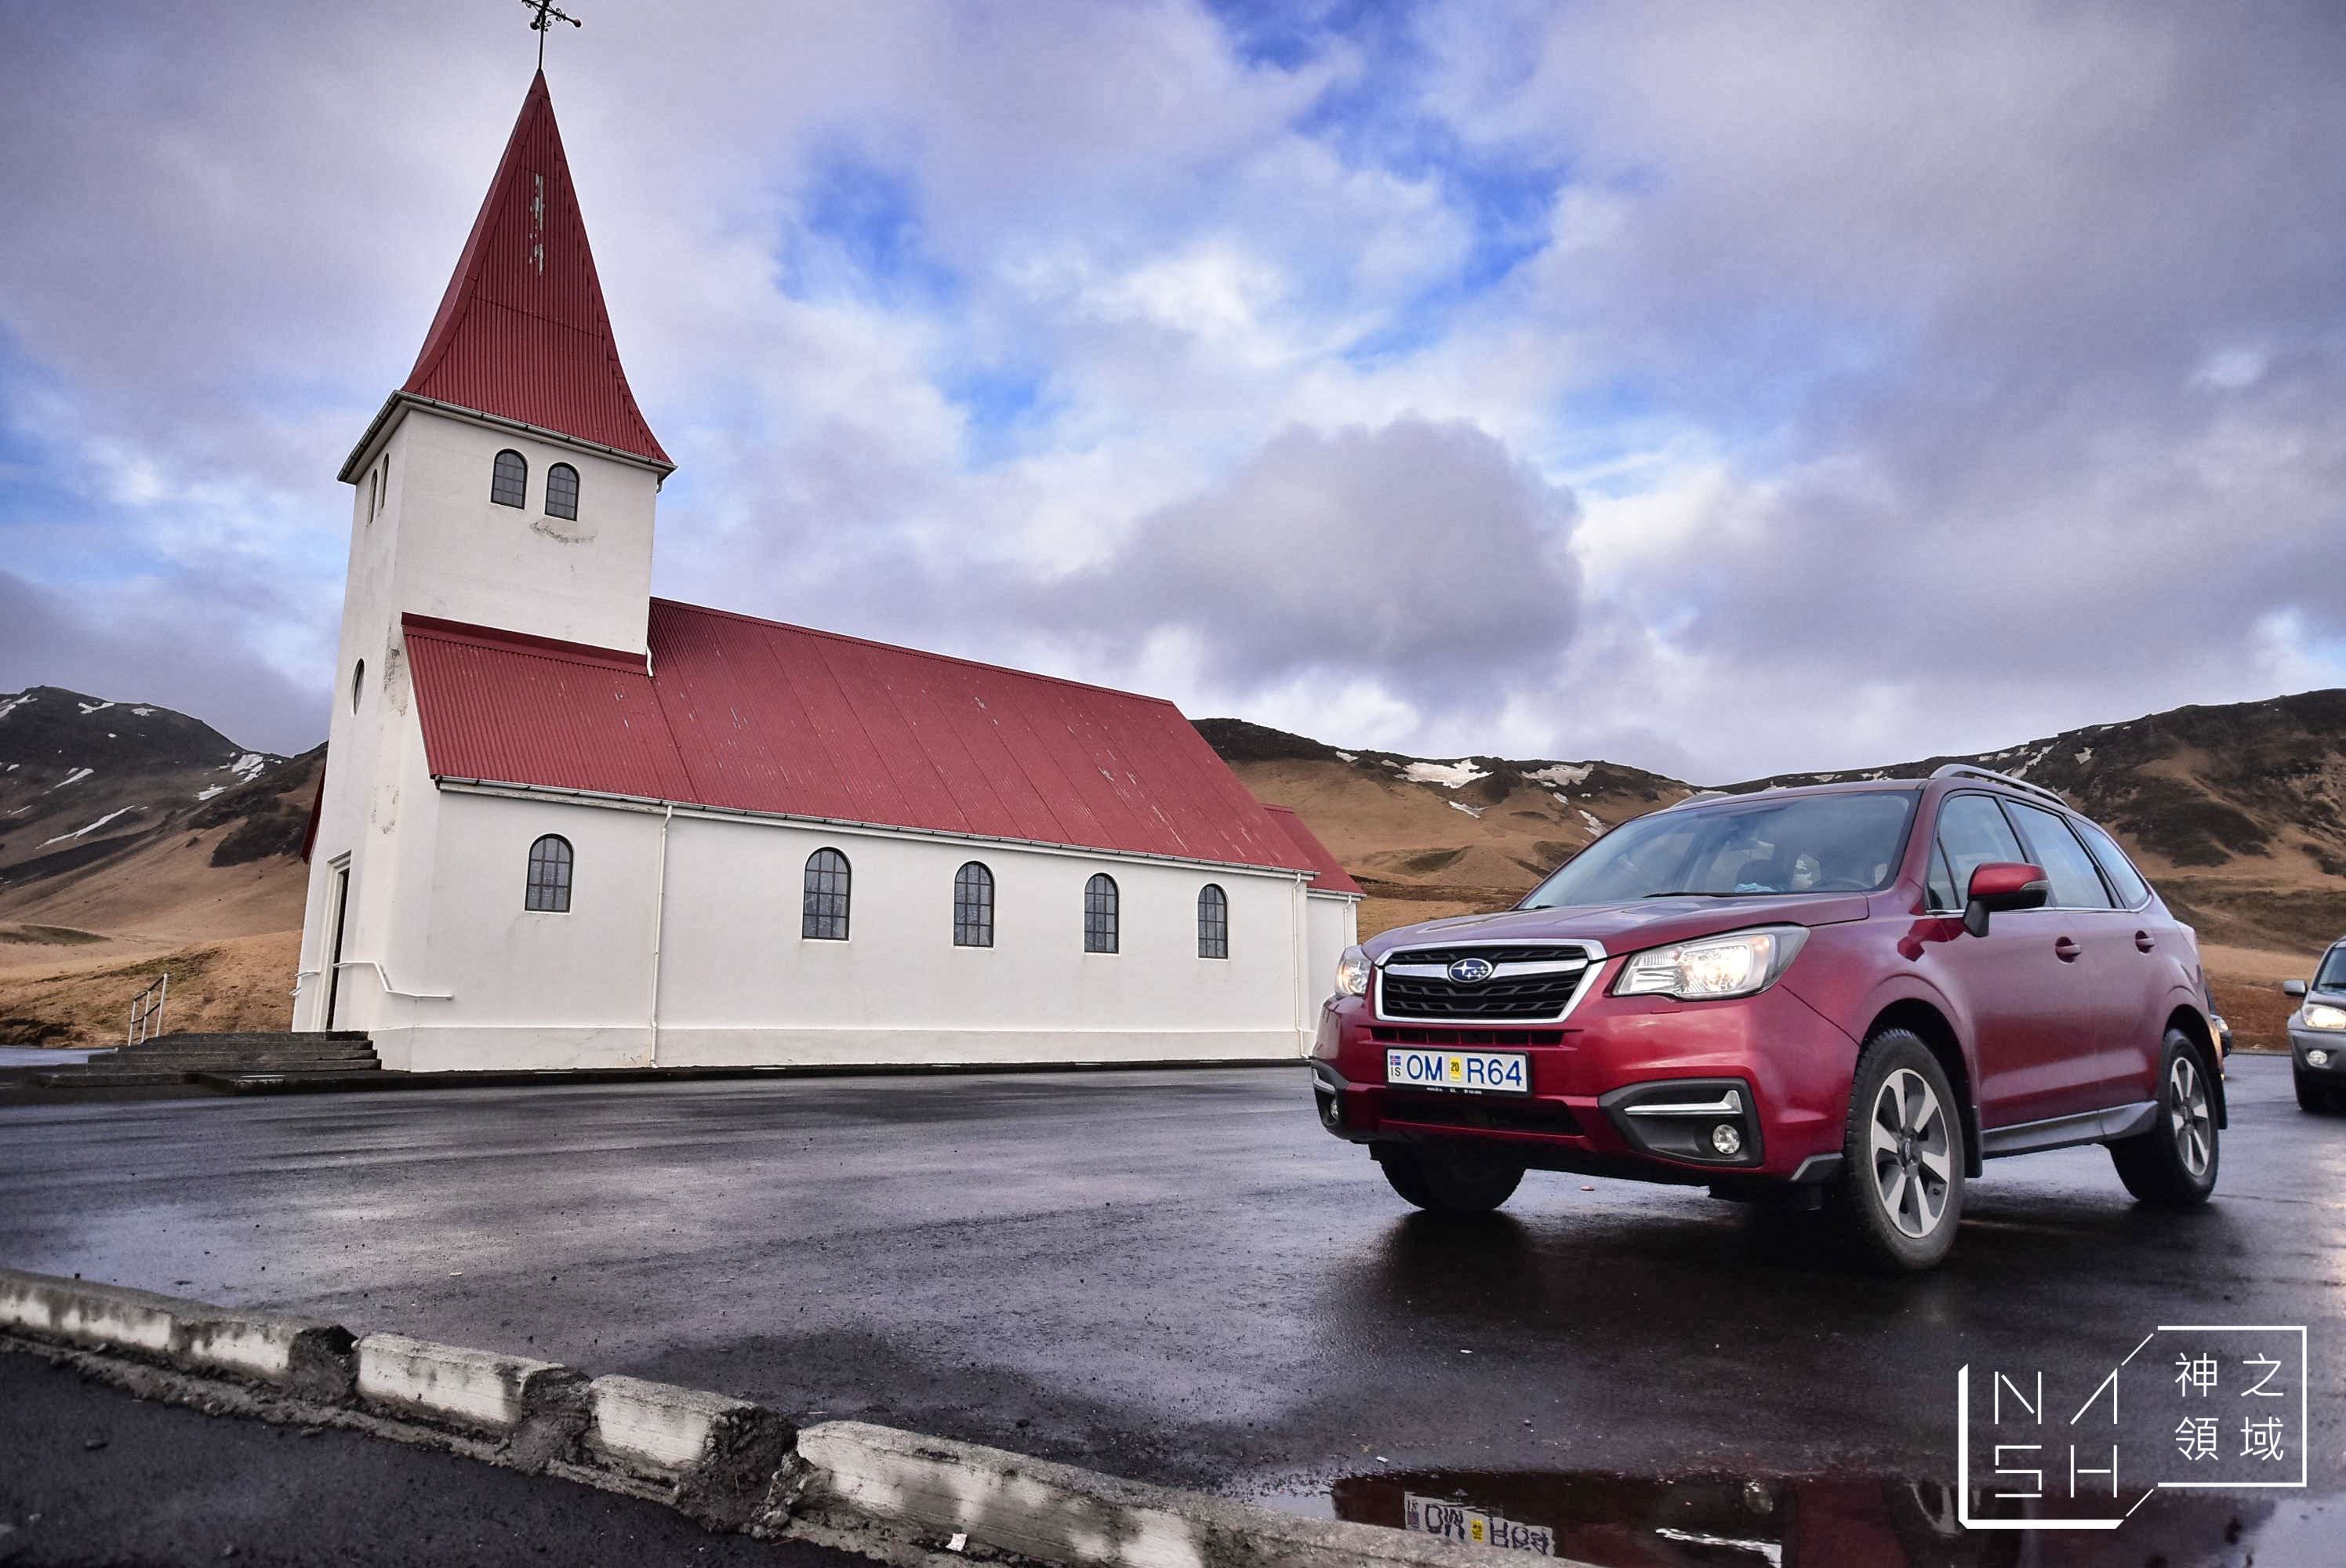 維克教堂,vik church,Vik i Myrdal Church,冰島自由行環島景點推薦,冰島自助景點推薦 @Nash，神之領域